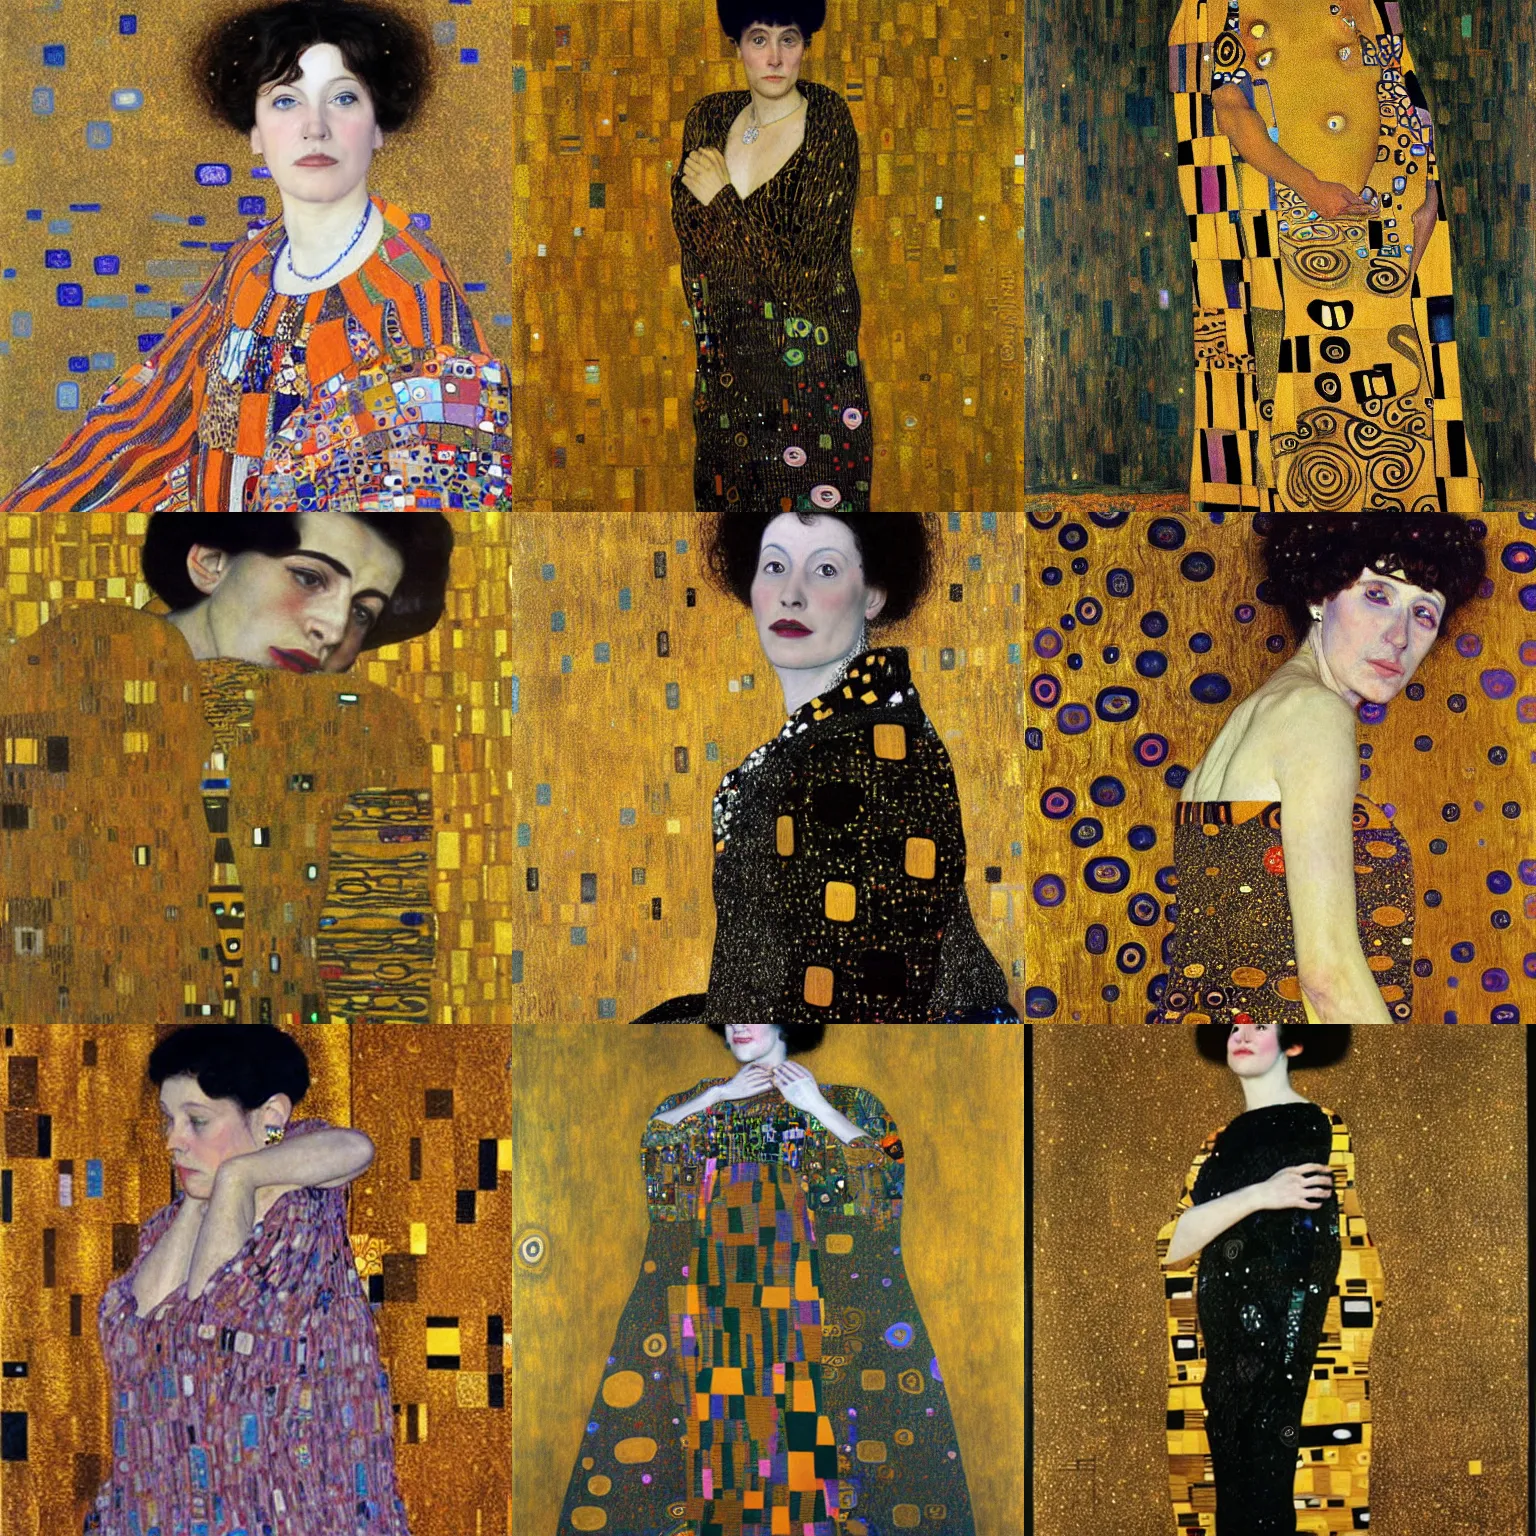 Prompt: Susan Lowenstein by Gustav Klimt